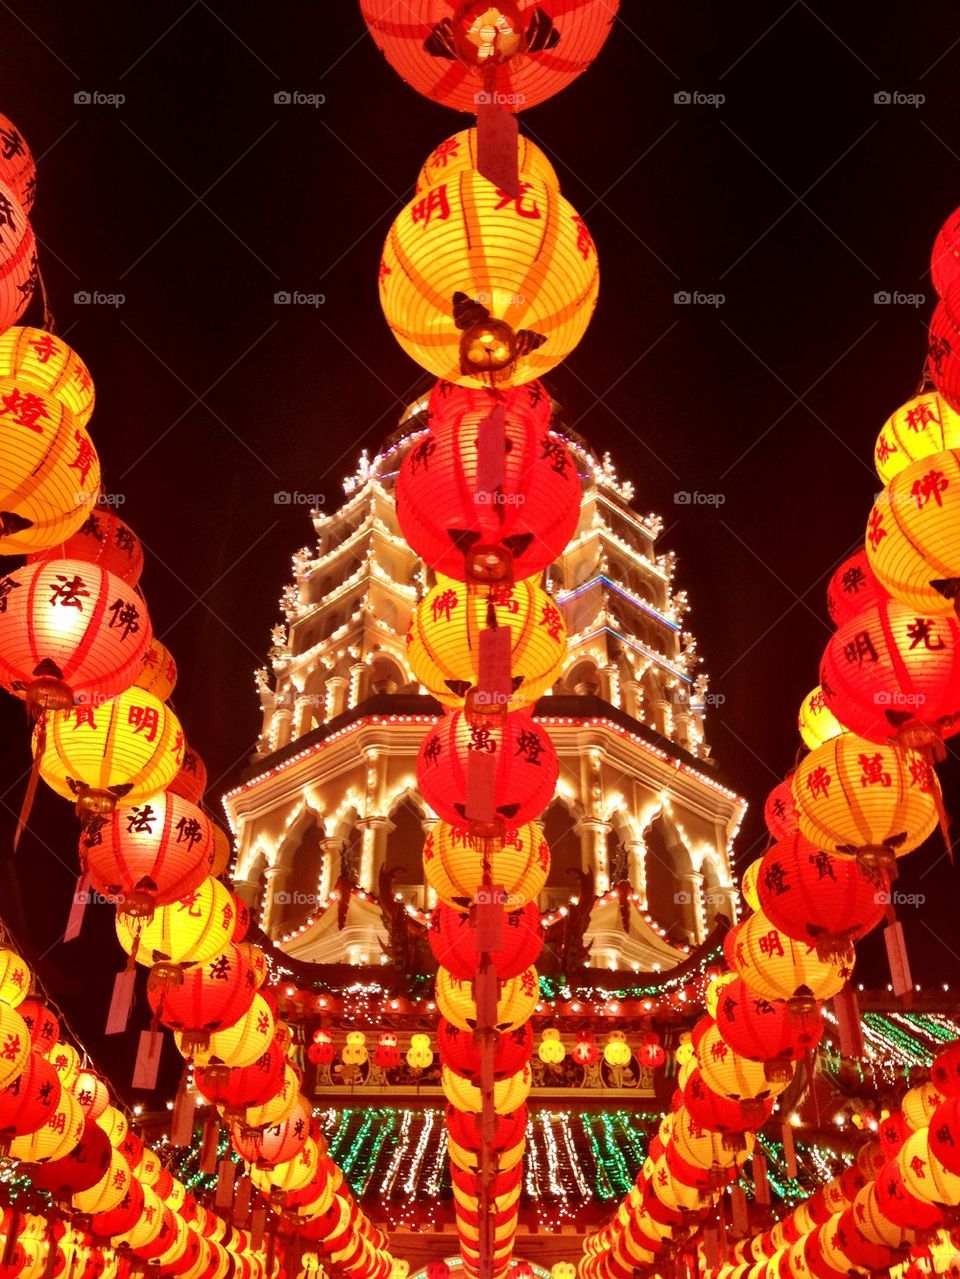 Illuminated pagoda at night